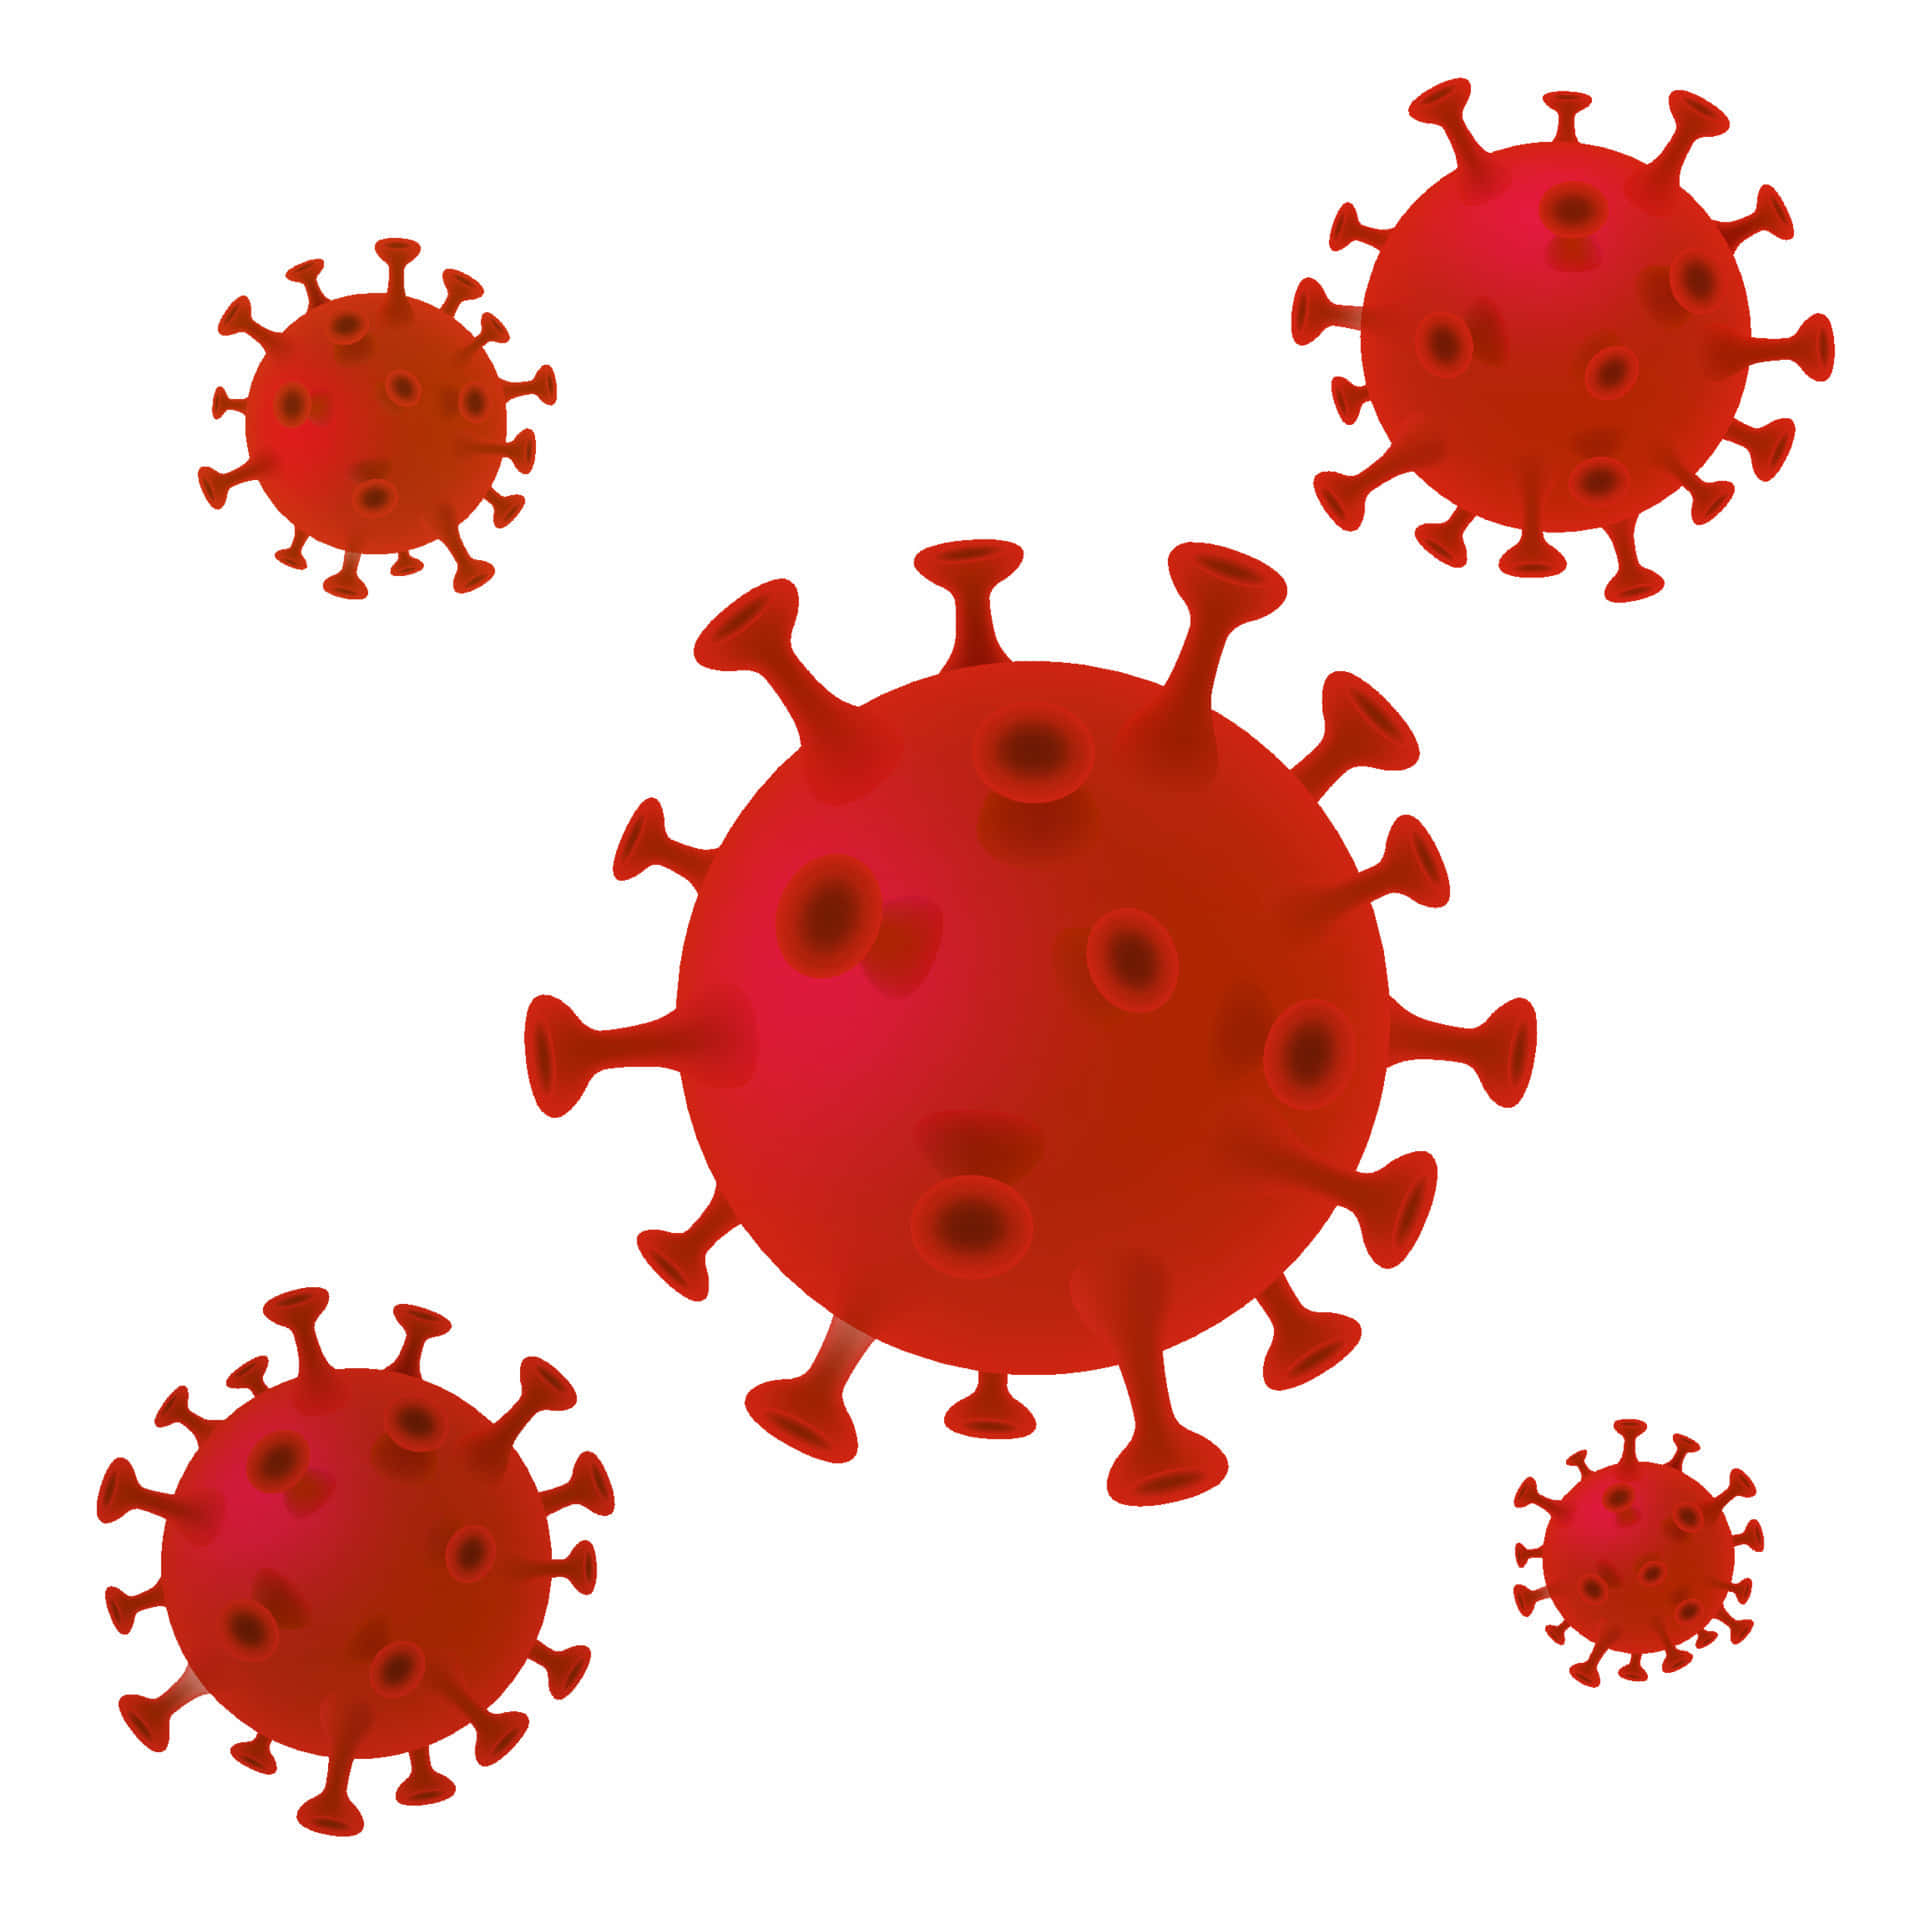 Vettorecoronavirus | Prezzo 1 Credito Usd $1